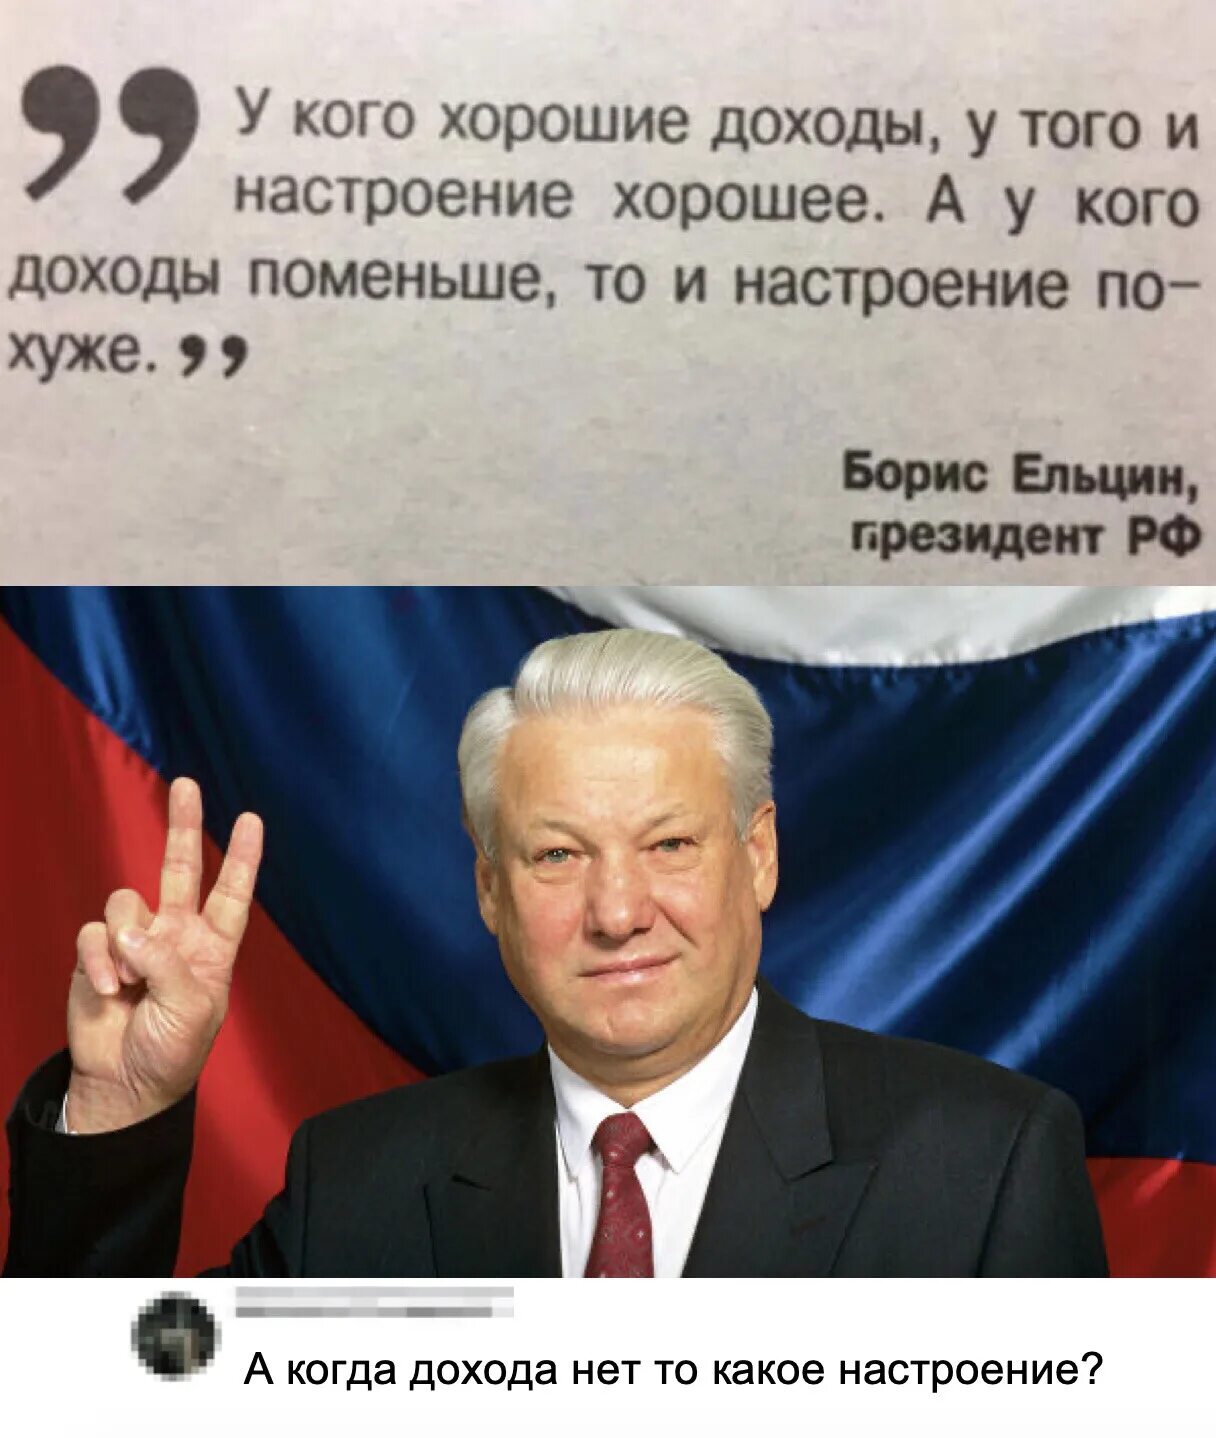 Фраза ельцина я ухожу. У кого доходы хорошие у того. Ельцин у кого хорошие доходы у того и настроение. Ельцин про доходы и настроение.